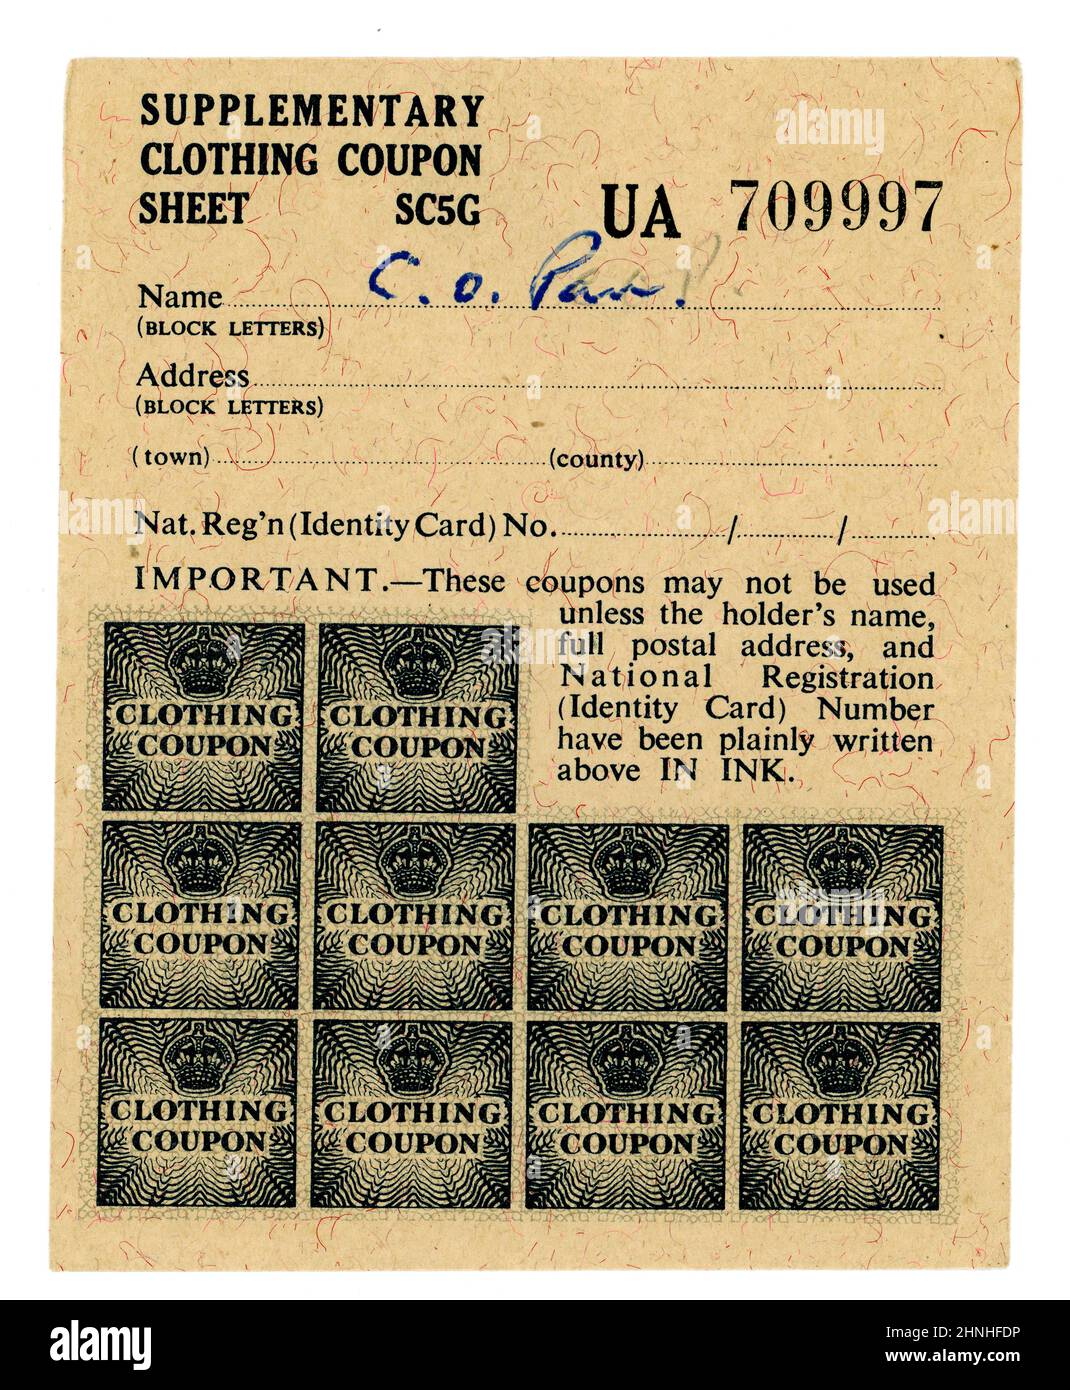 Originalgutscheine für Zusatzbekleidung aus dem Rationsbuch vom 1947-1948. Die Rationierung der Kleidung endete erst am 15. März 1949. GROSSBRITANNIEN Stockfoto